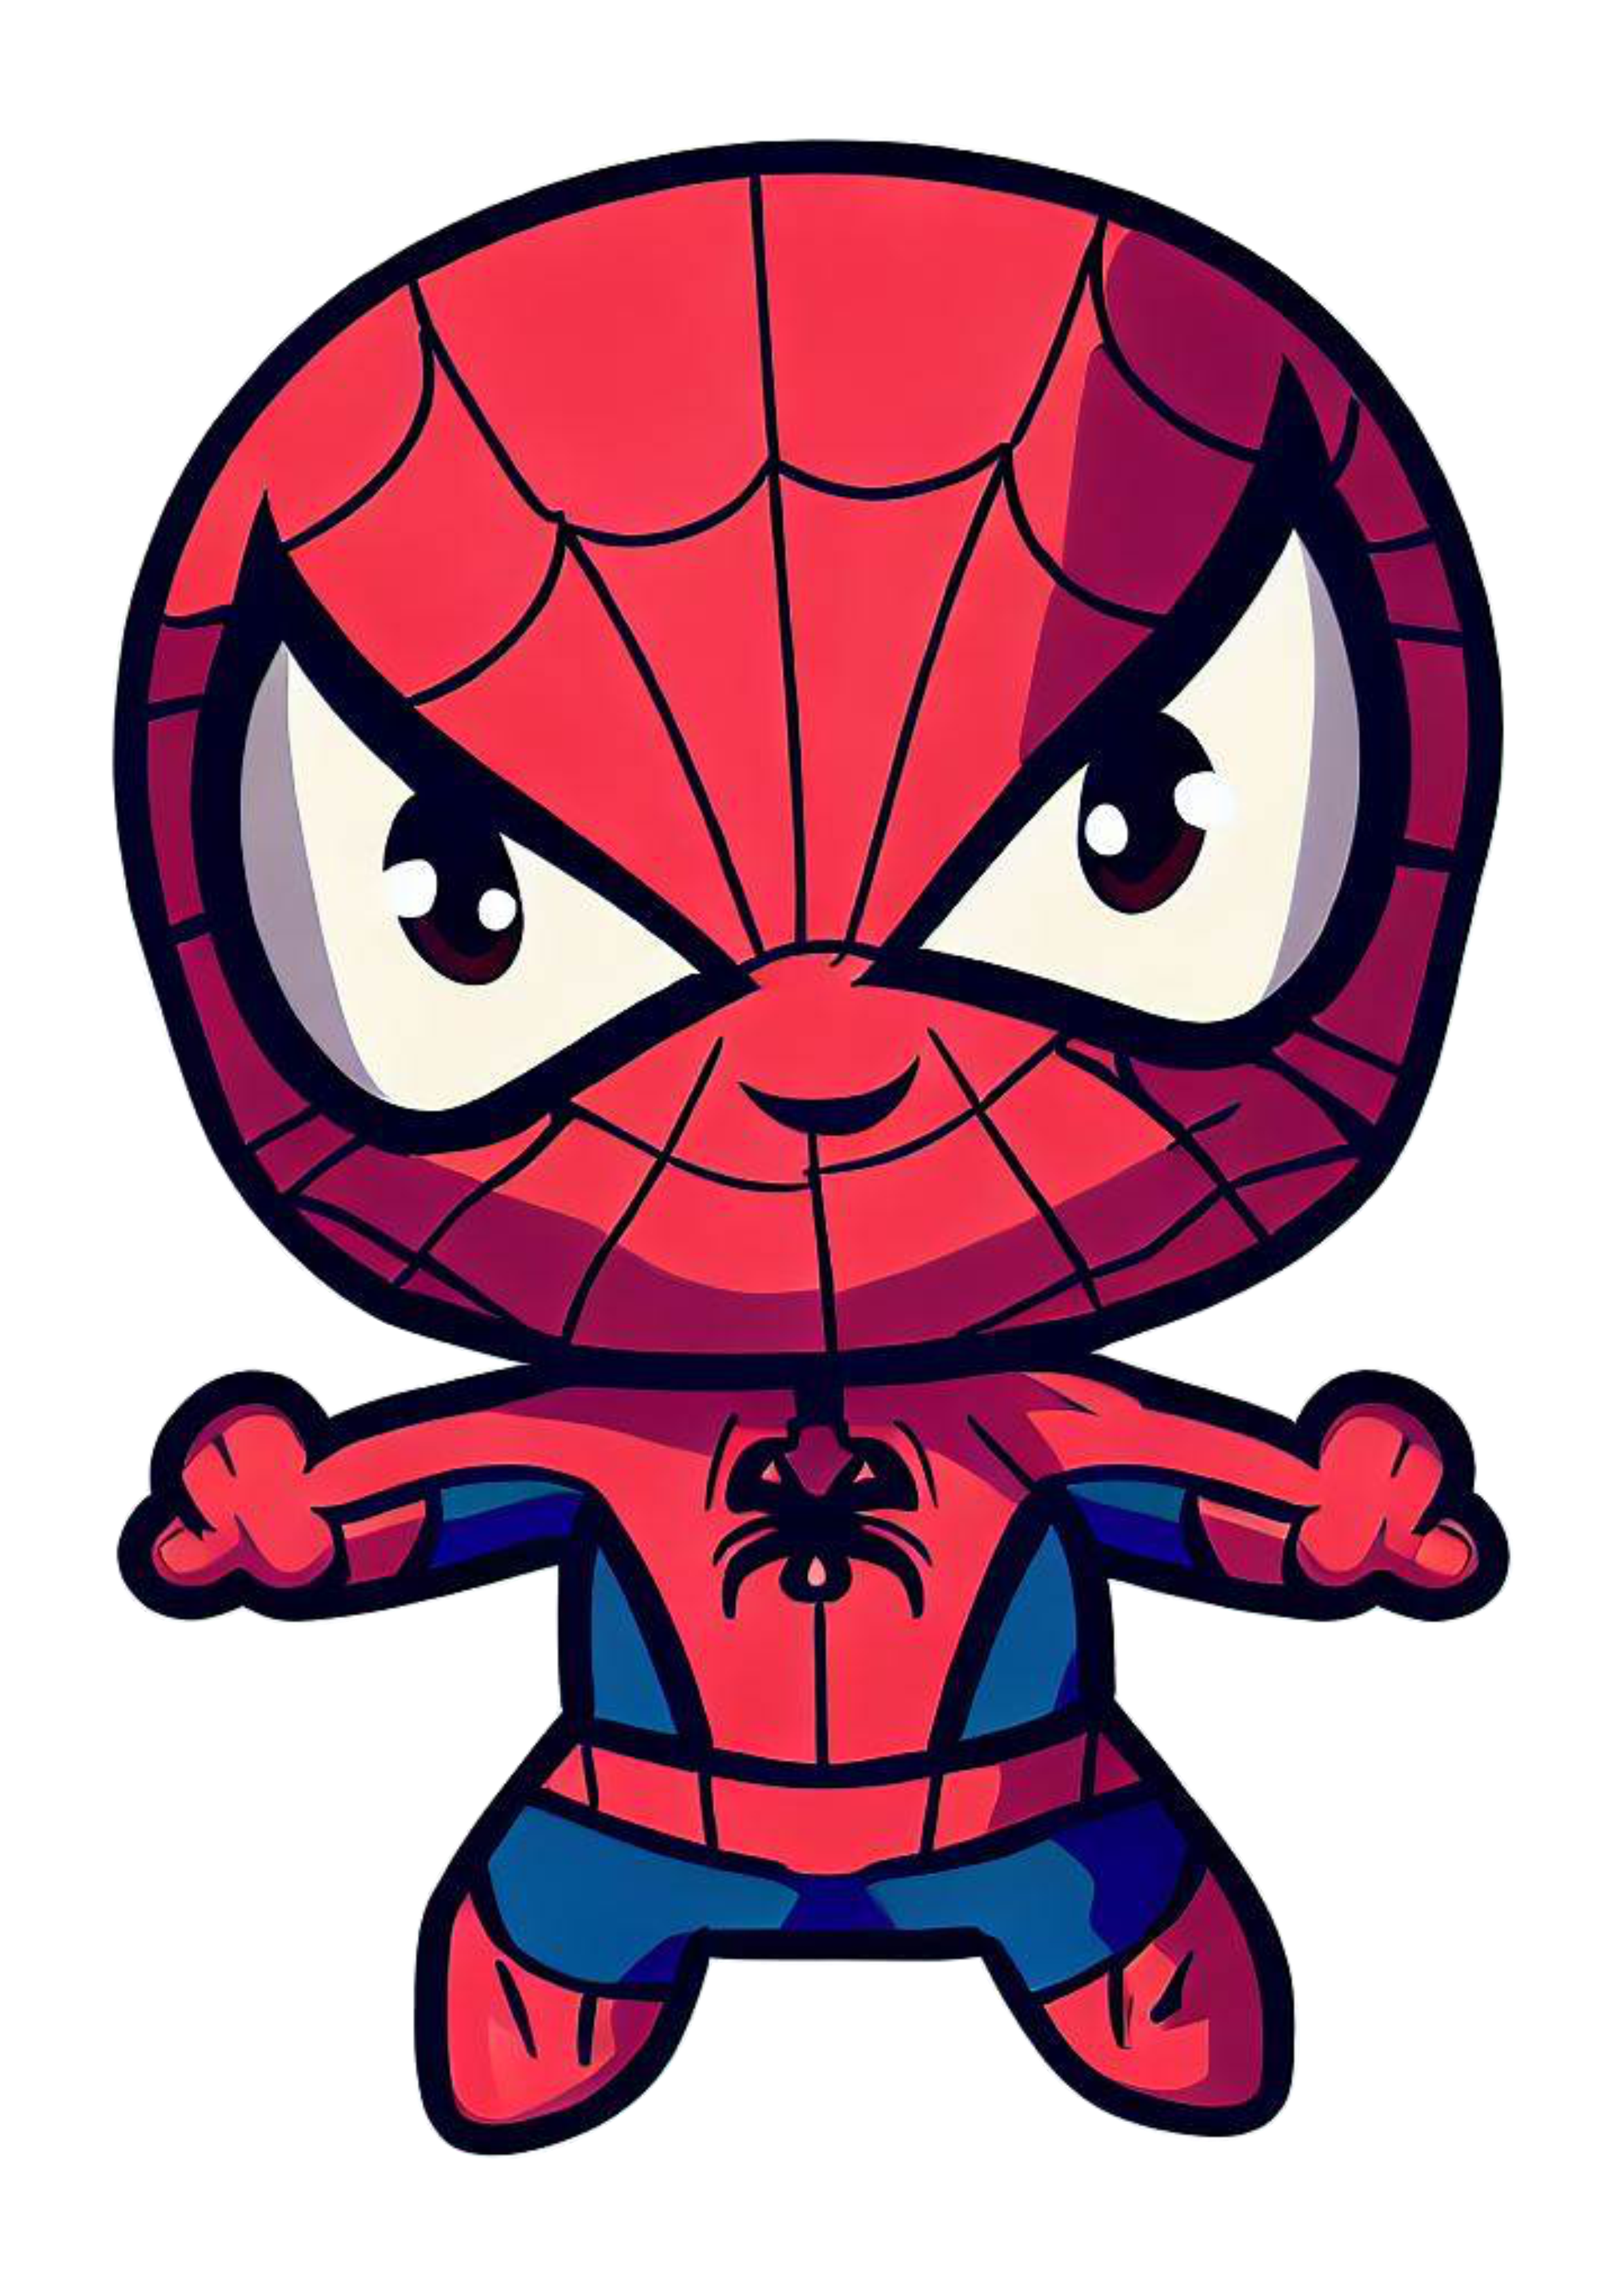 Homem aranha cute spider man ultimate baby ilustração universo Marvel fantasia infantil caricatura Peter Parker png